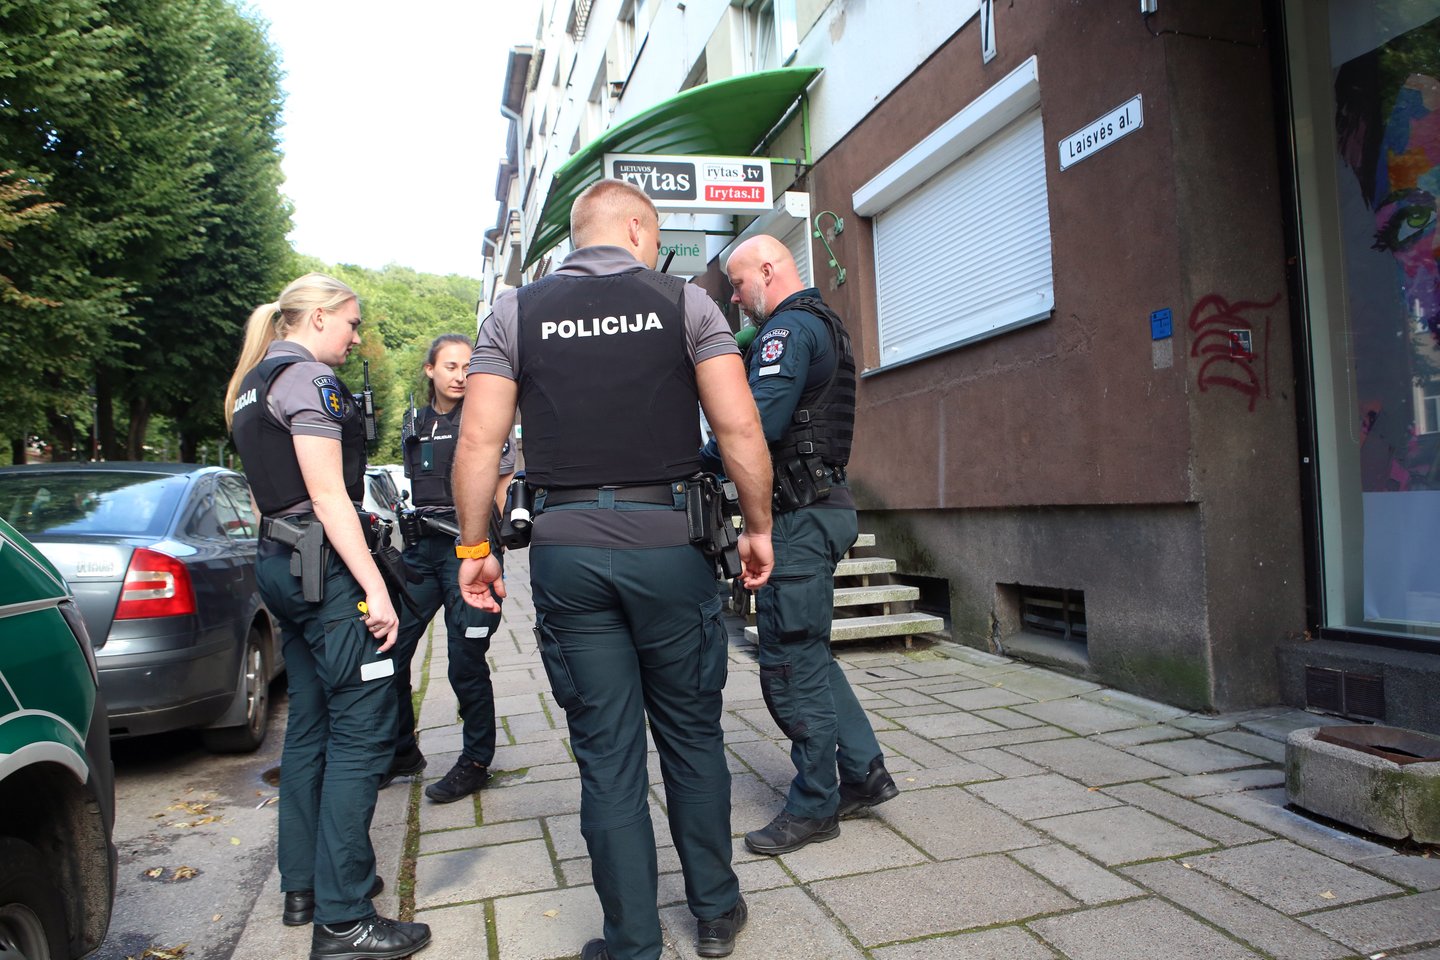  Į nuomojamą butą Kauno centre skubėjo medikai ir policijos pareigūnai. <br> M.Patašiaus nuotr.